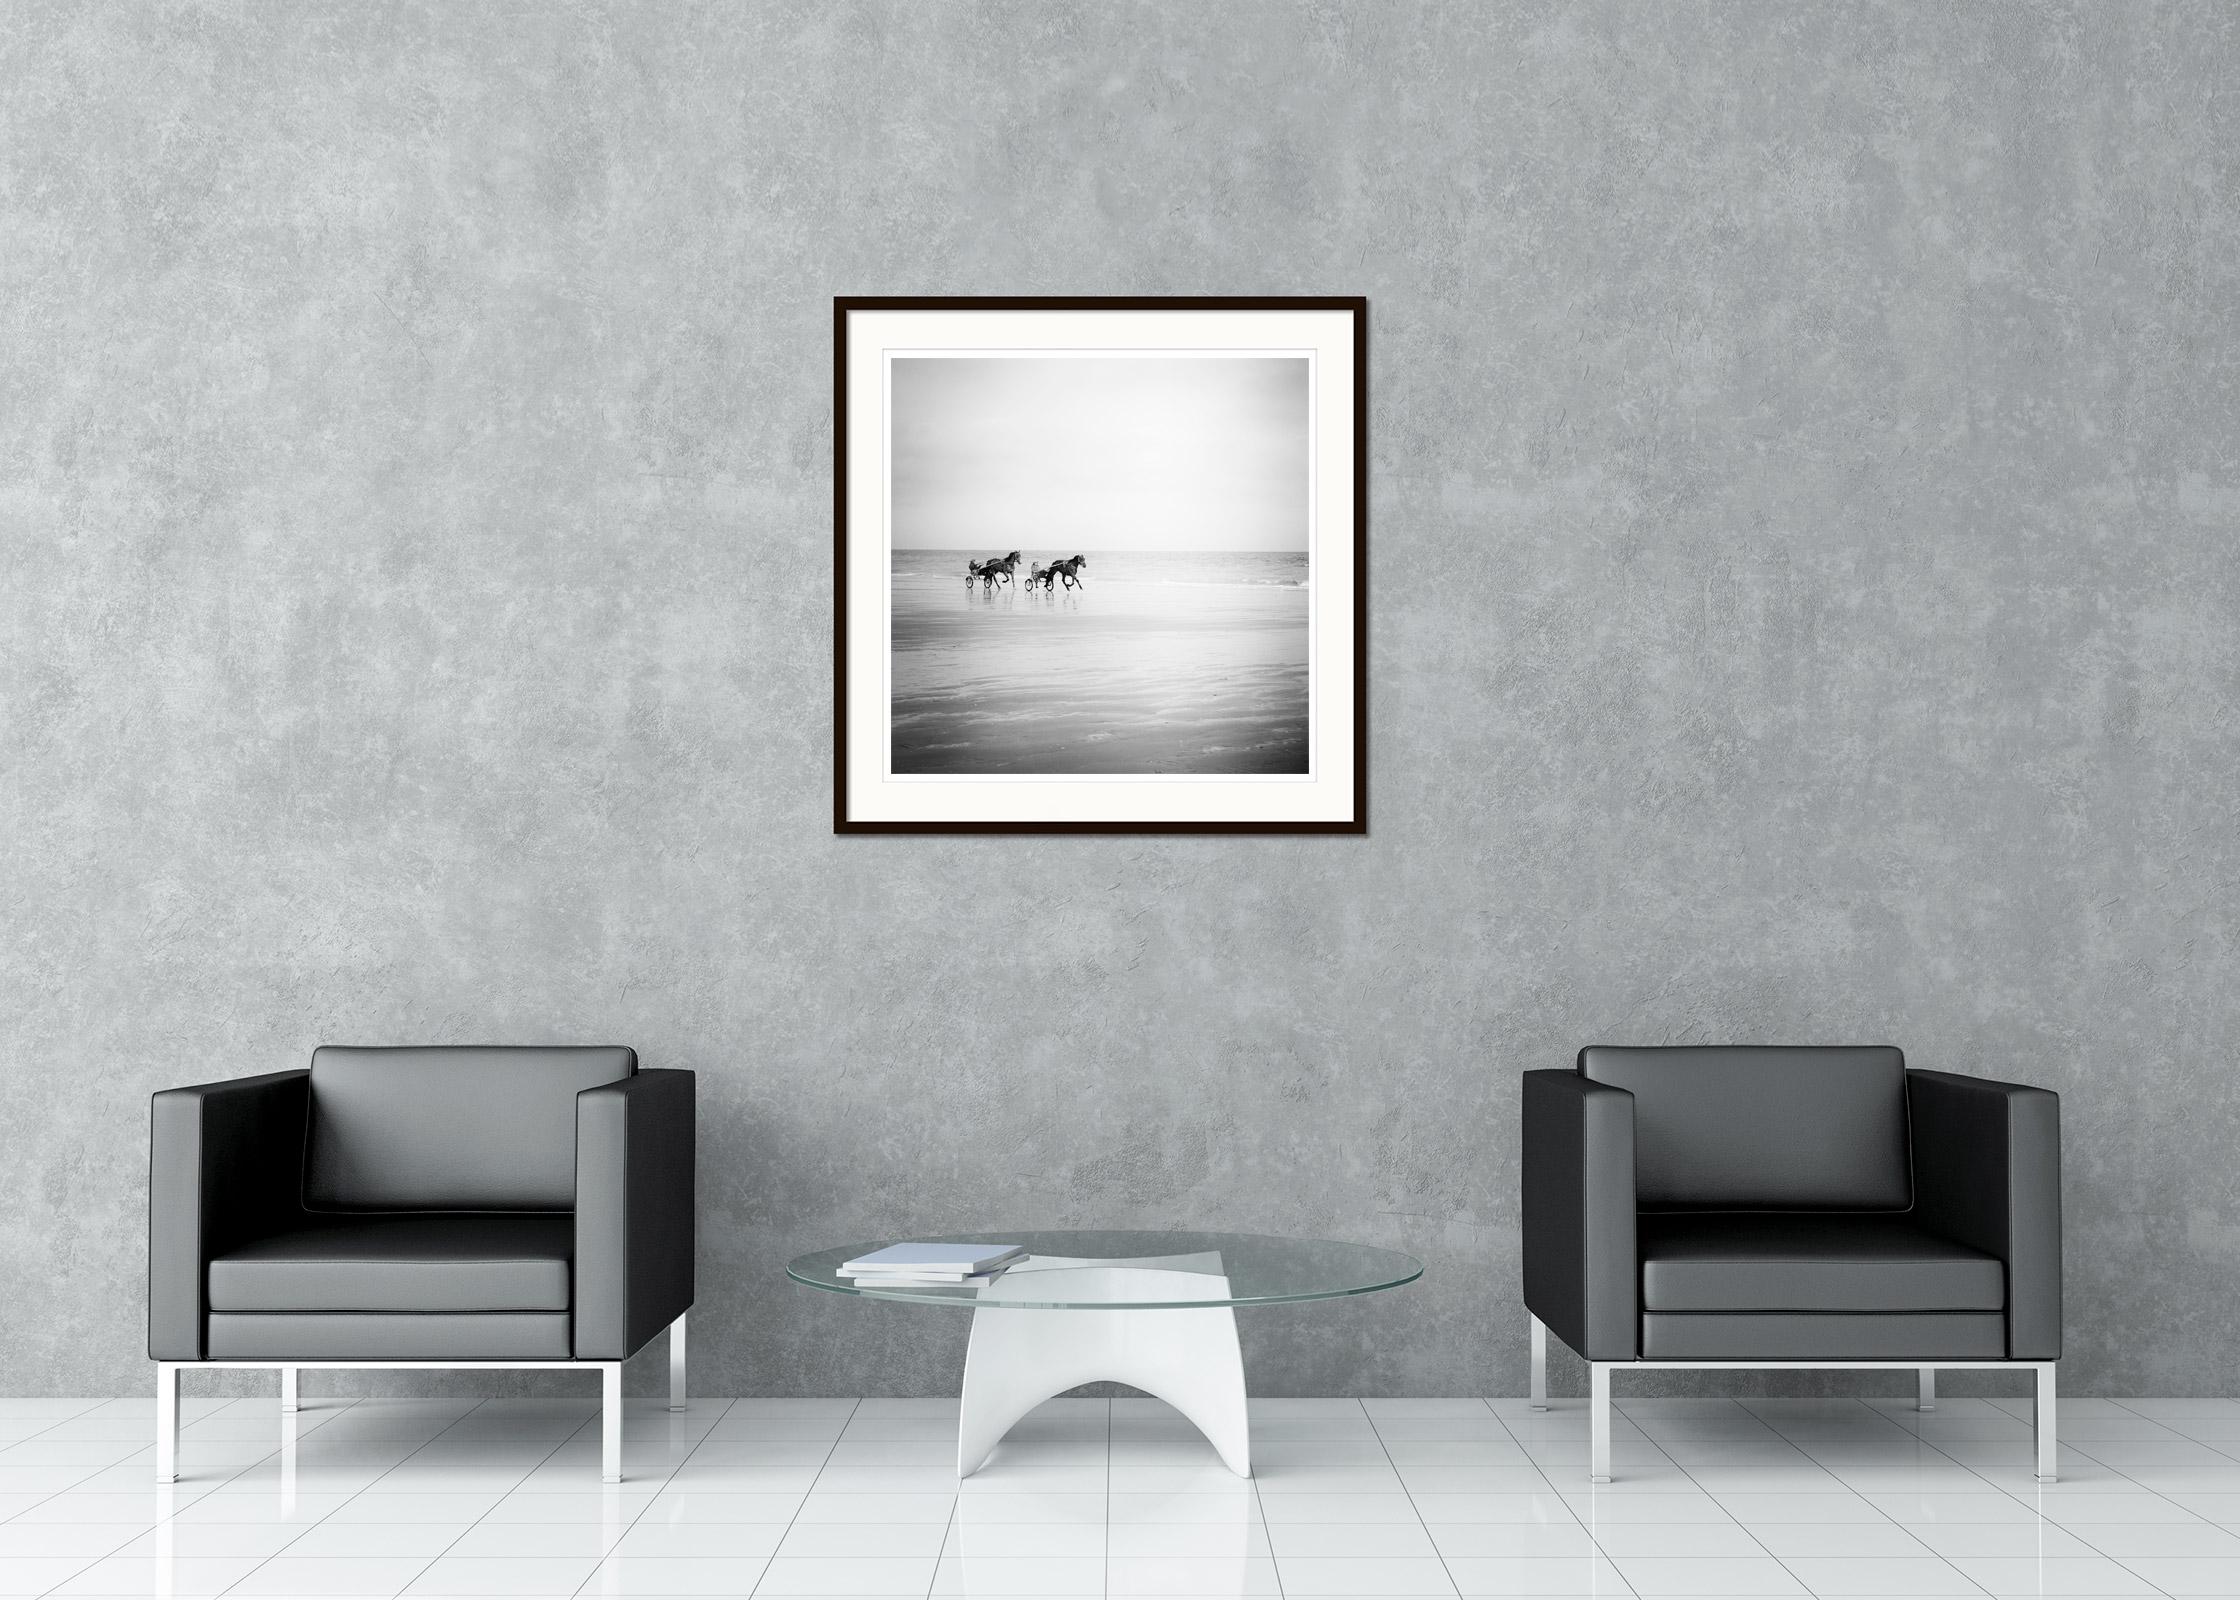 Black and White Fine Art Photography - Trabrennfahrer am einsamen Strand der Normandie, Frankreich. Pigmenttintendruck, Auflage 9, signiert, betitelt, datiert und nummeriert vom Künstler. Mit Echtheitszertifikat. Bedruckt mit einem 4 cm breiten